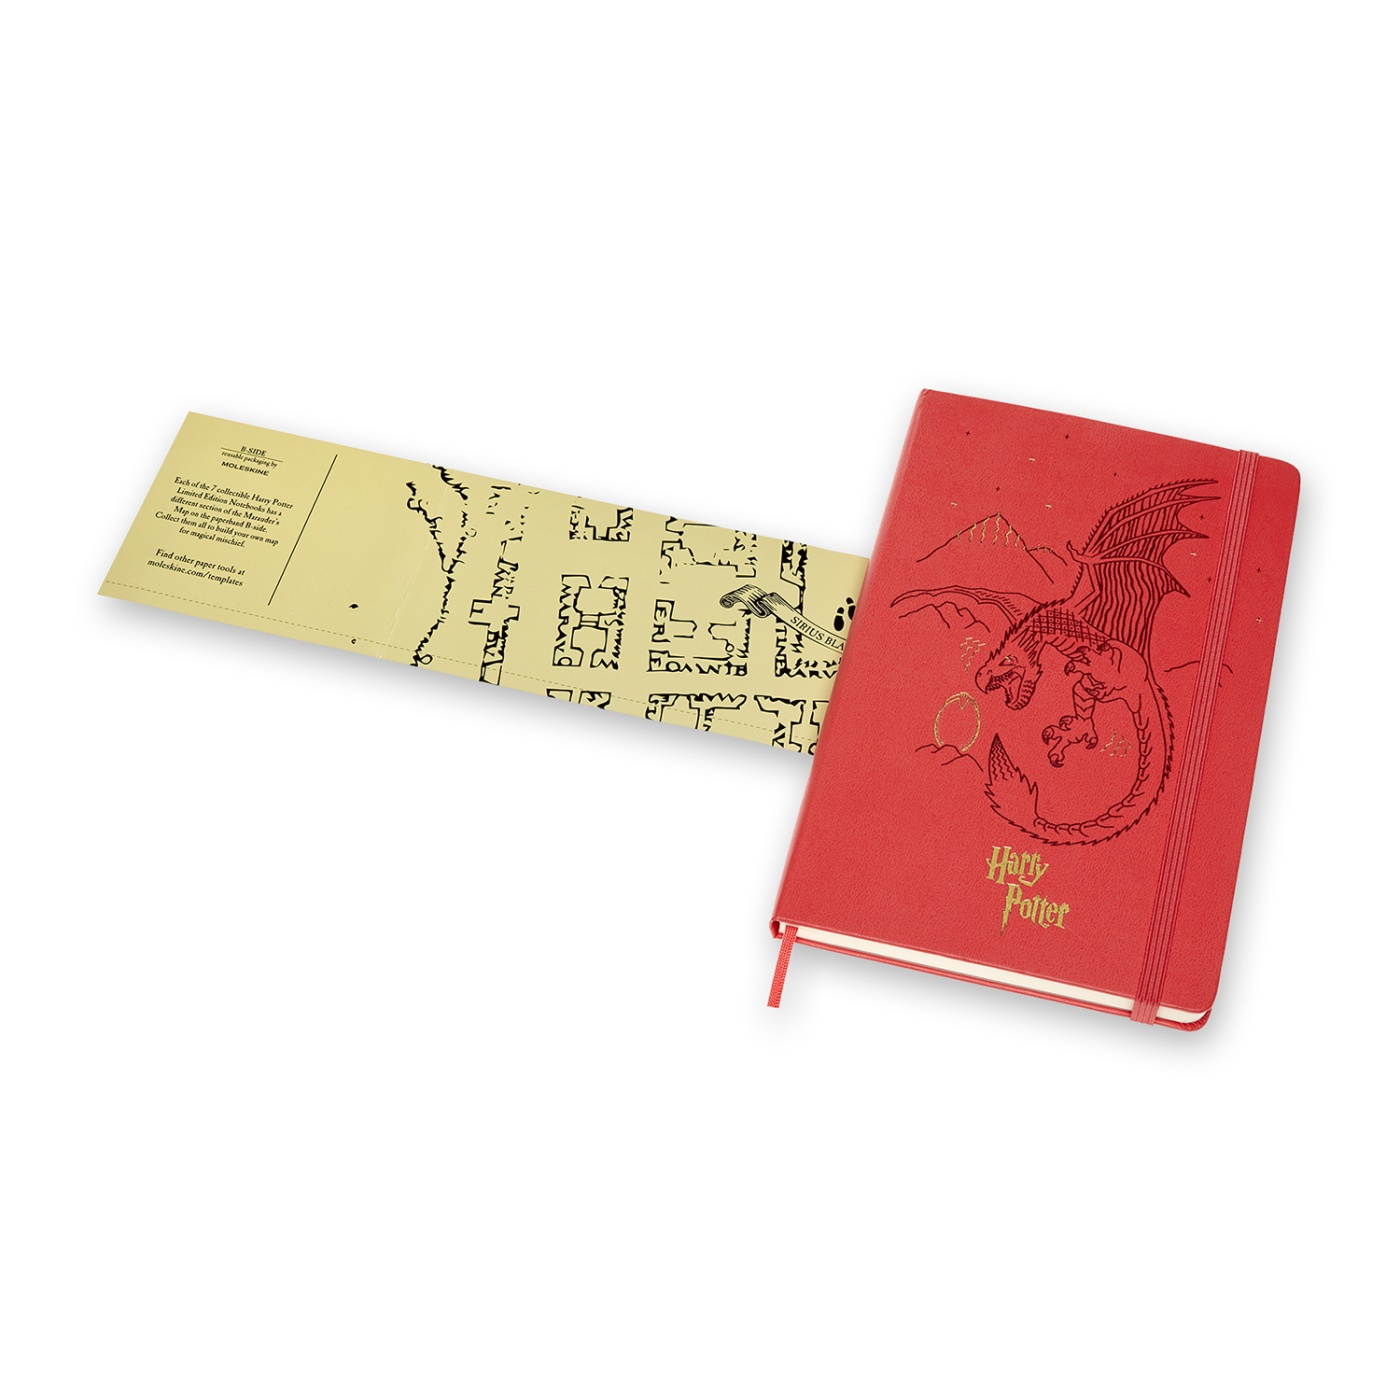 Hardcover Large Harry Potter Red in der Gruppe Papier & Blöcke / Schreiben und Notizen / Notizbücher bei Pen Store (100467)